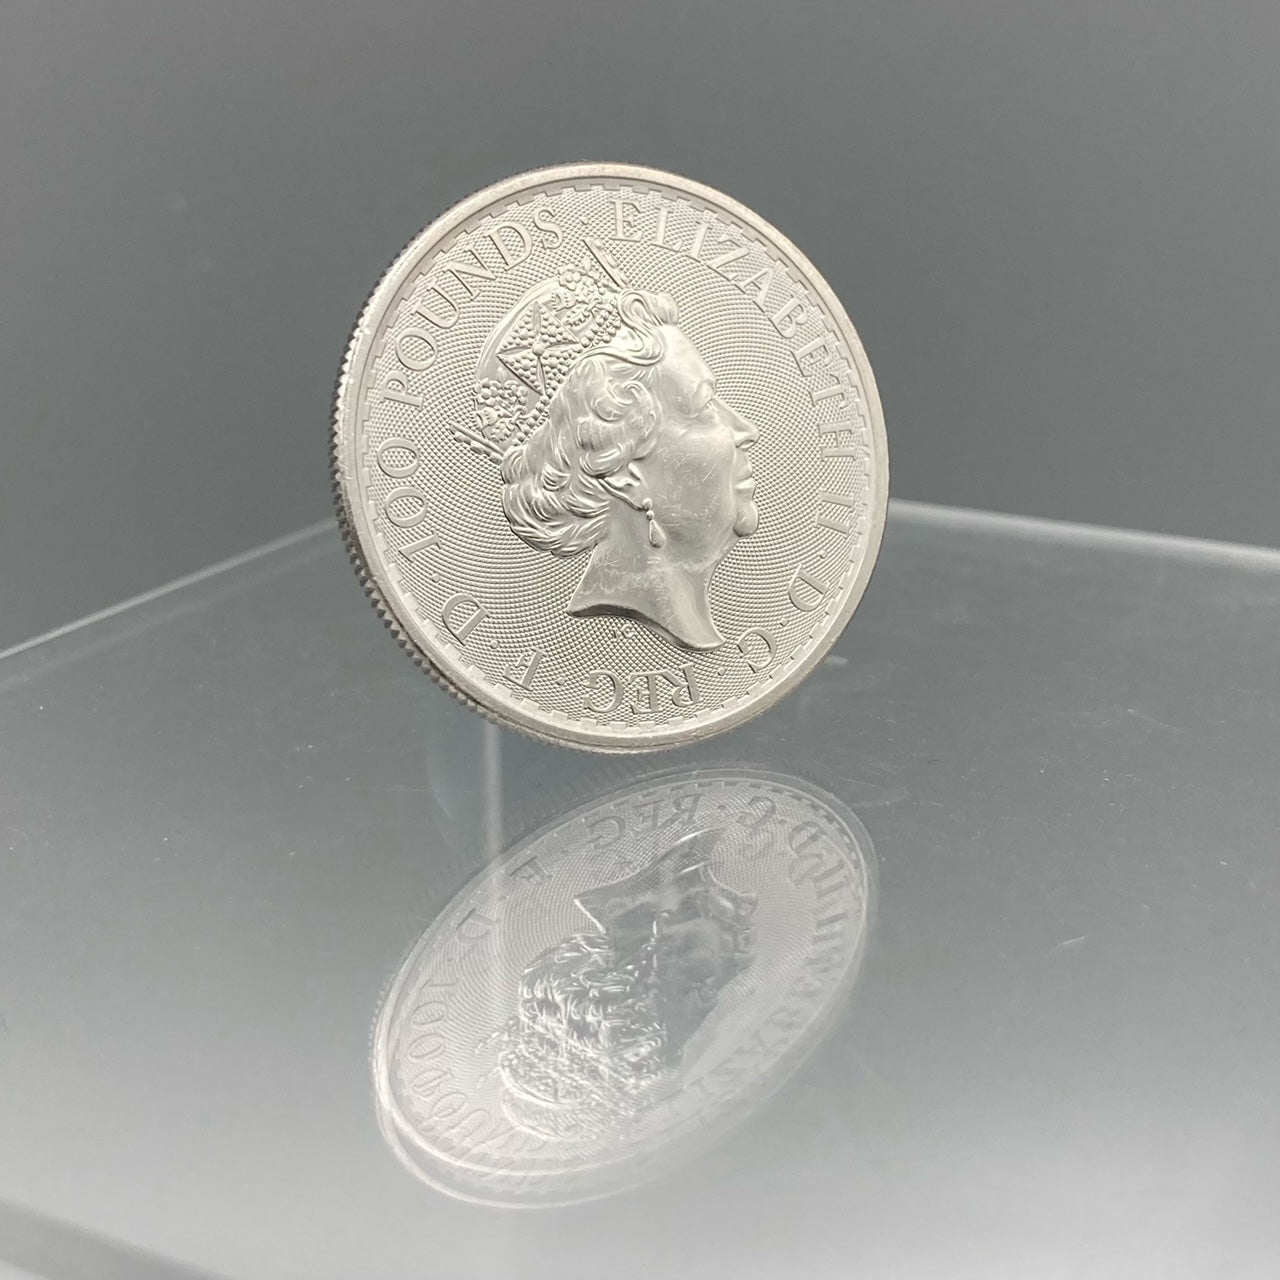 1 oz Platinum Britannia Coin (2021) (PRICE ON REQUEST)